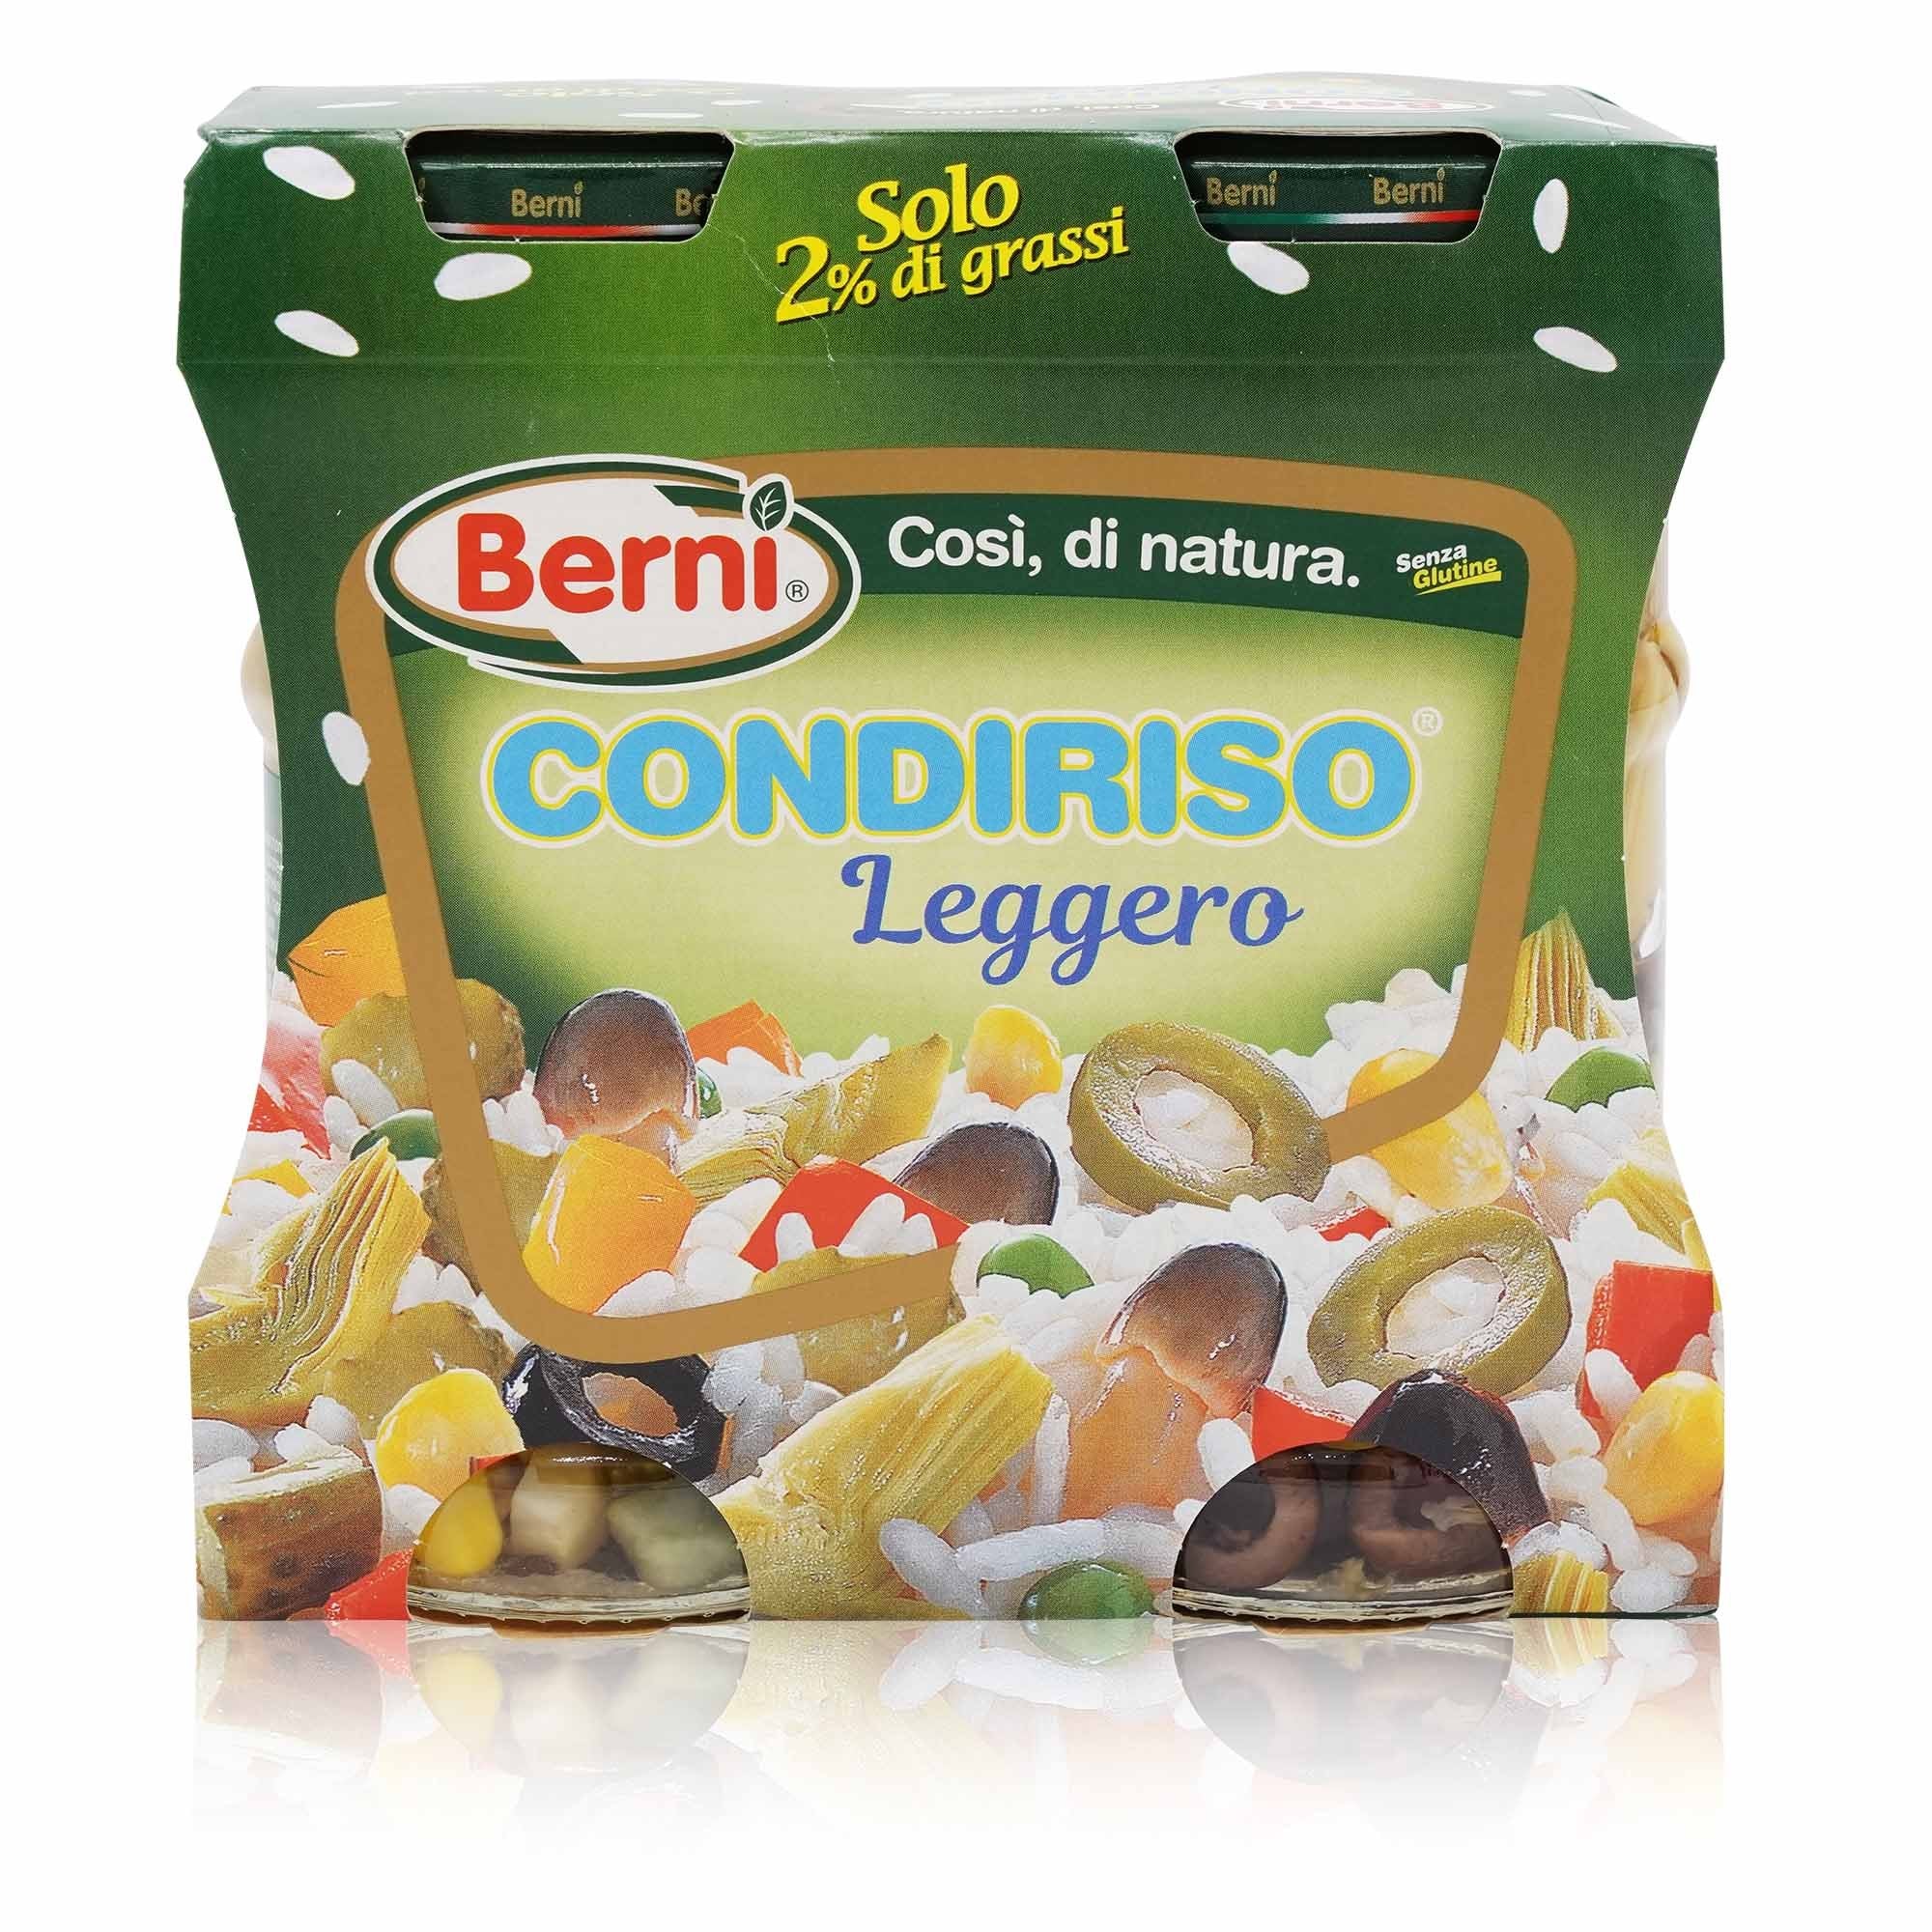 BERNI Condiriso Leggero – Gemüsemix leicht für Reis - 0,6kg - italienisch-einkaufen.de